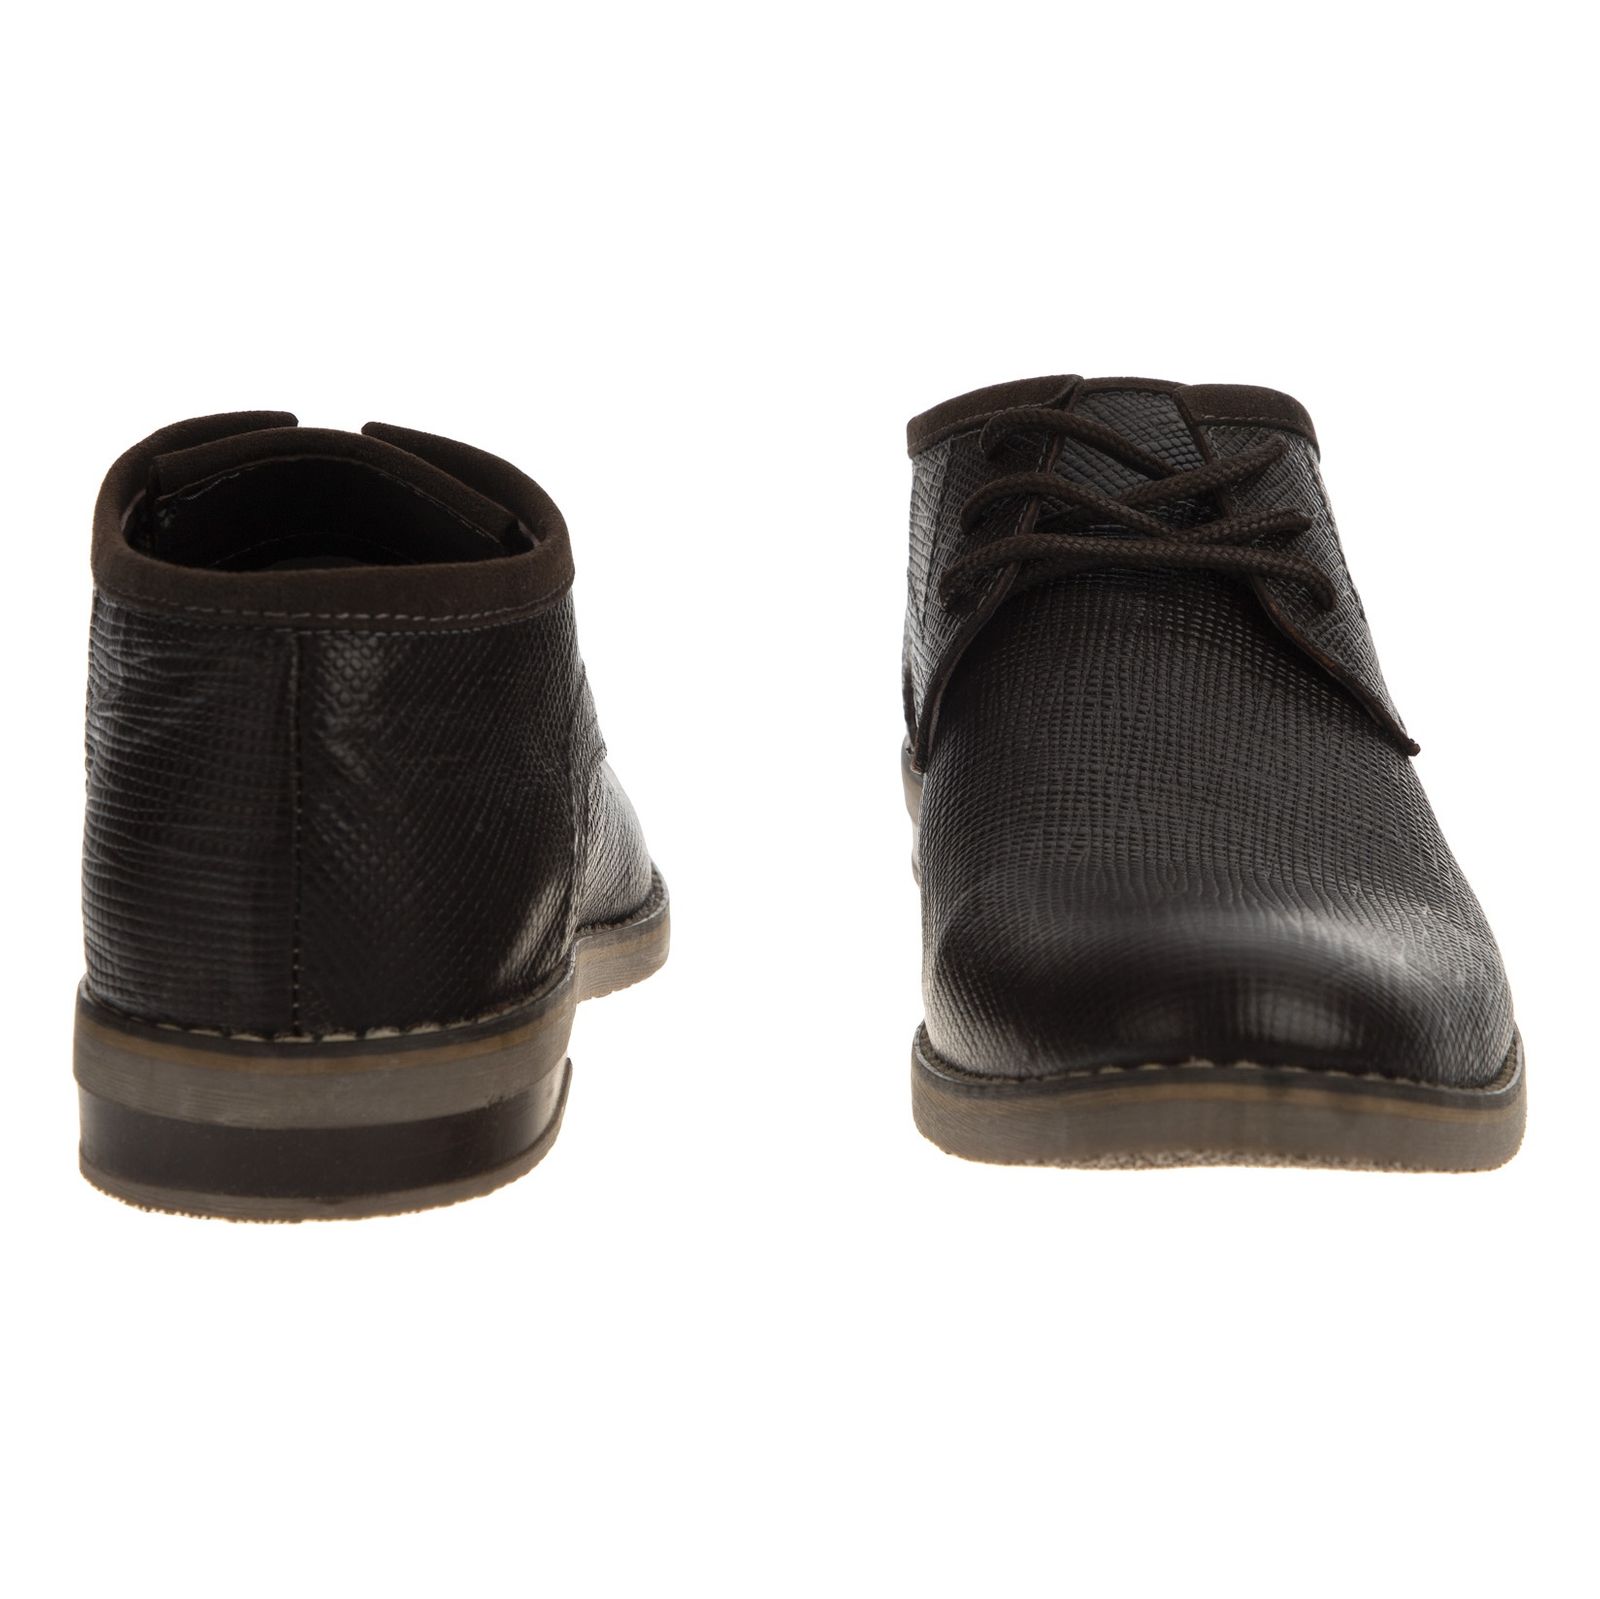 کفش مردانه ریمکس مدل 7231A503-104 - قهوه ای - 5